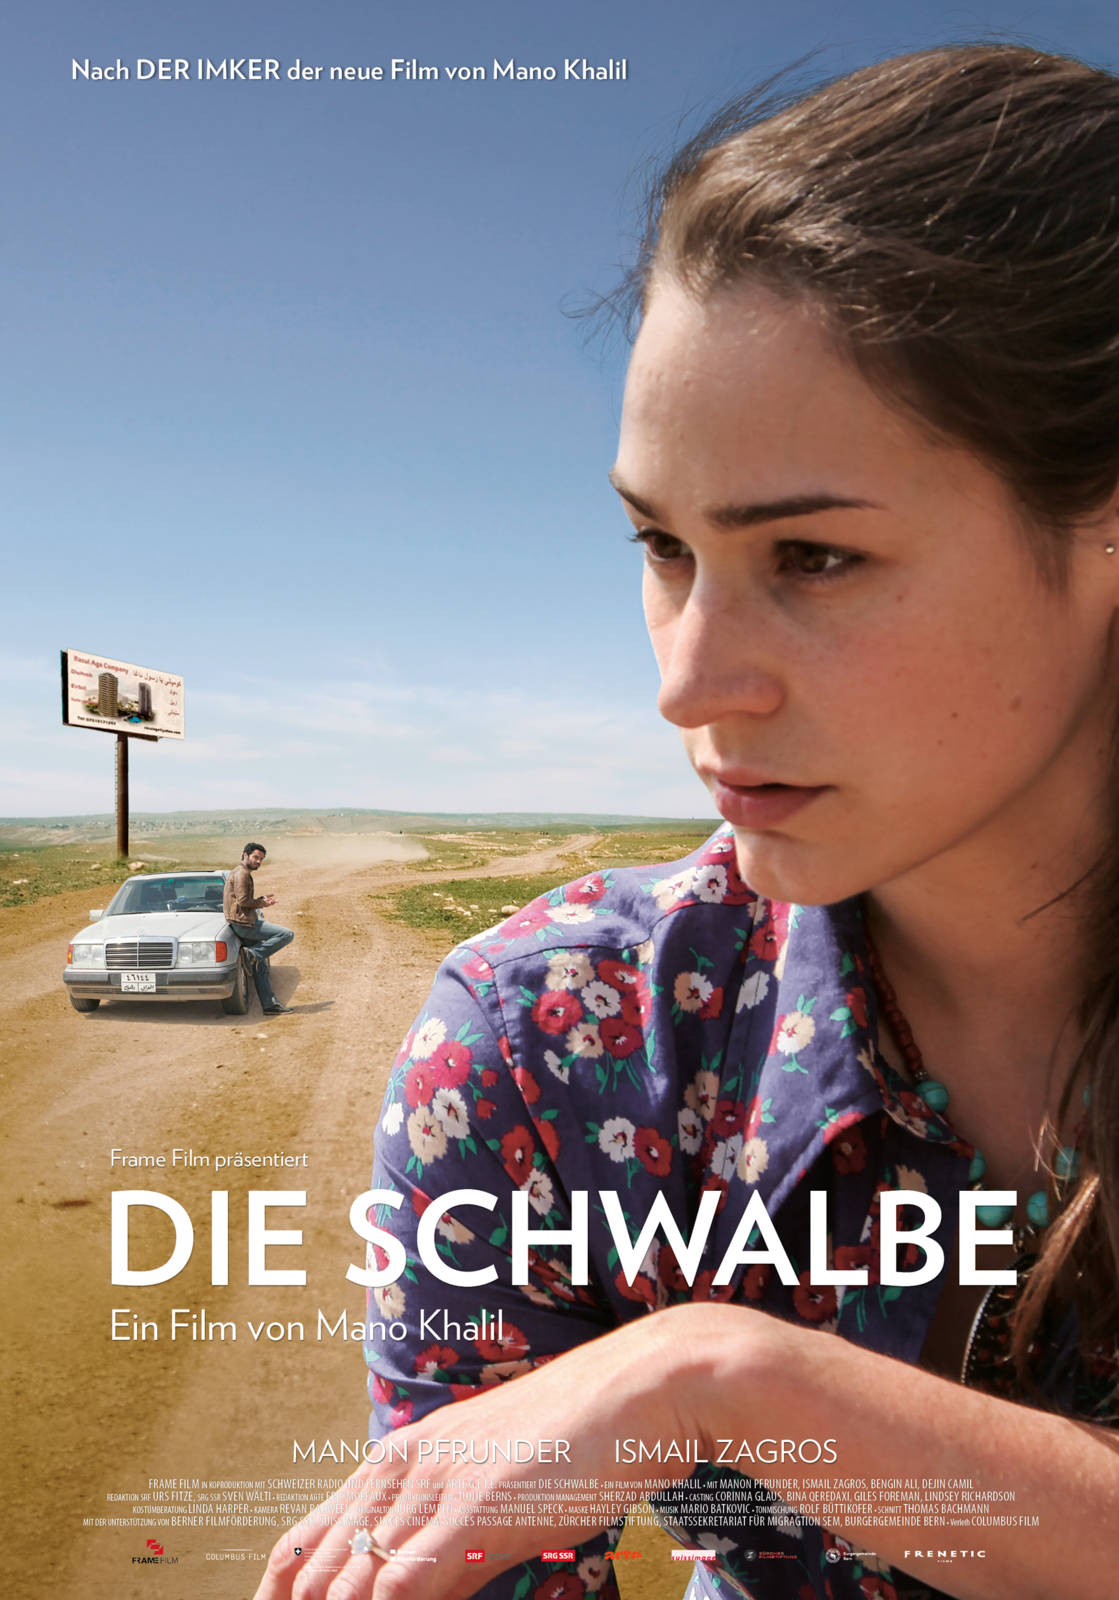 Filmvorführung "Die Schwalbe" Gemeinde Melchnau